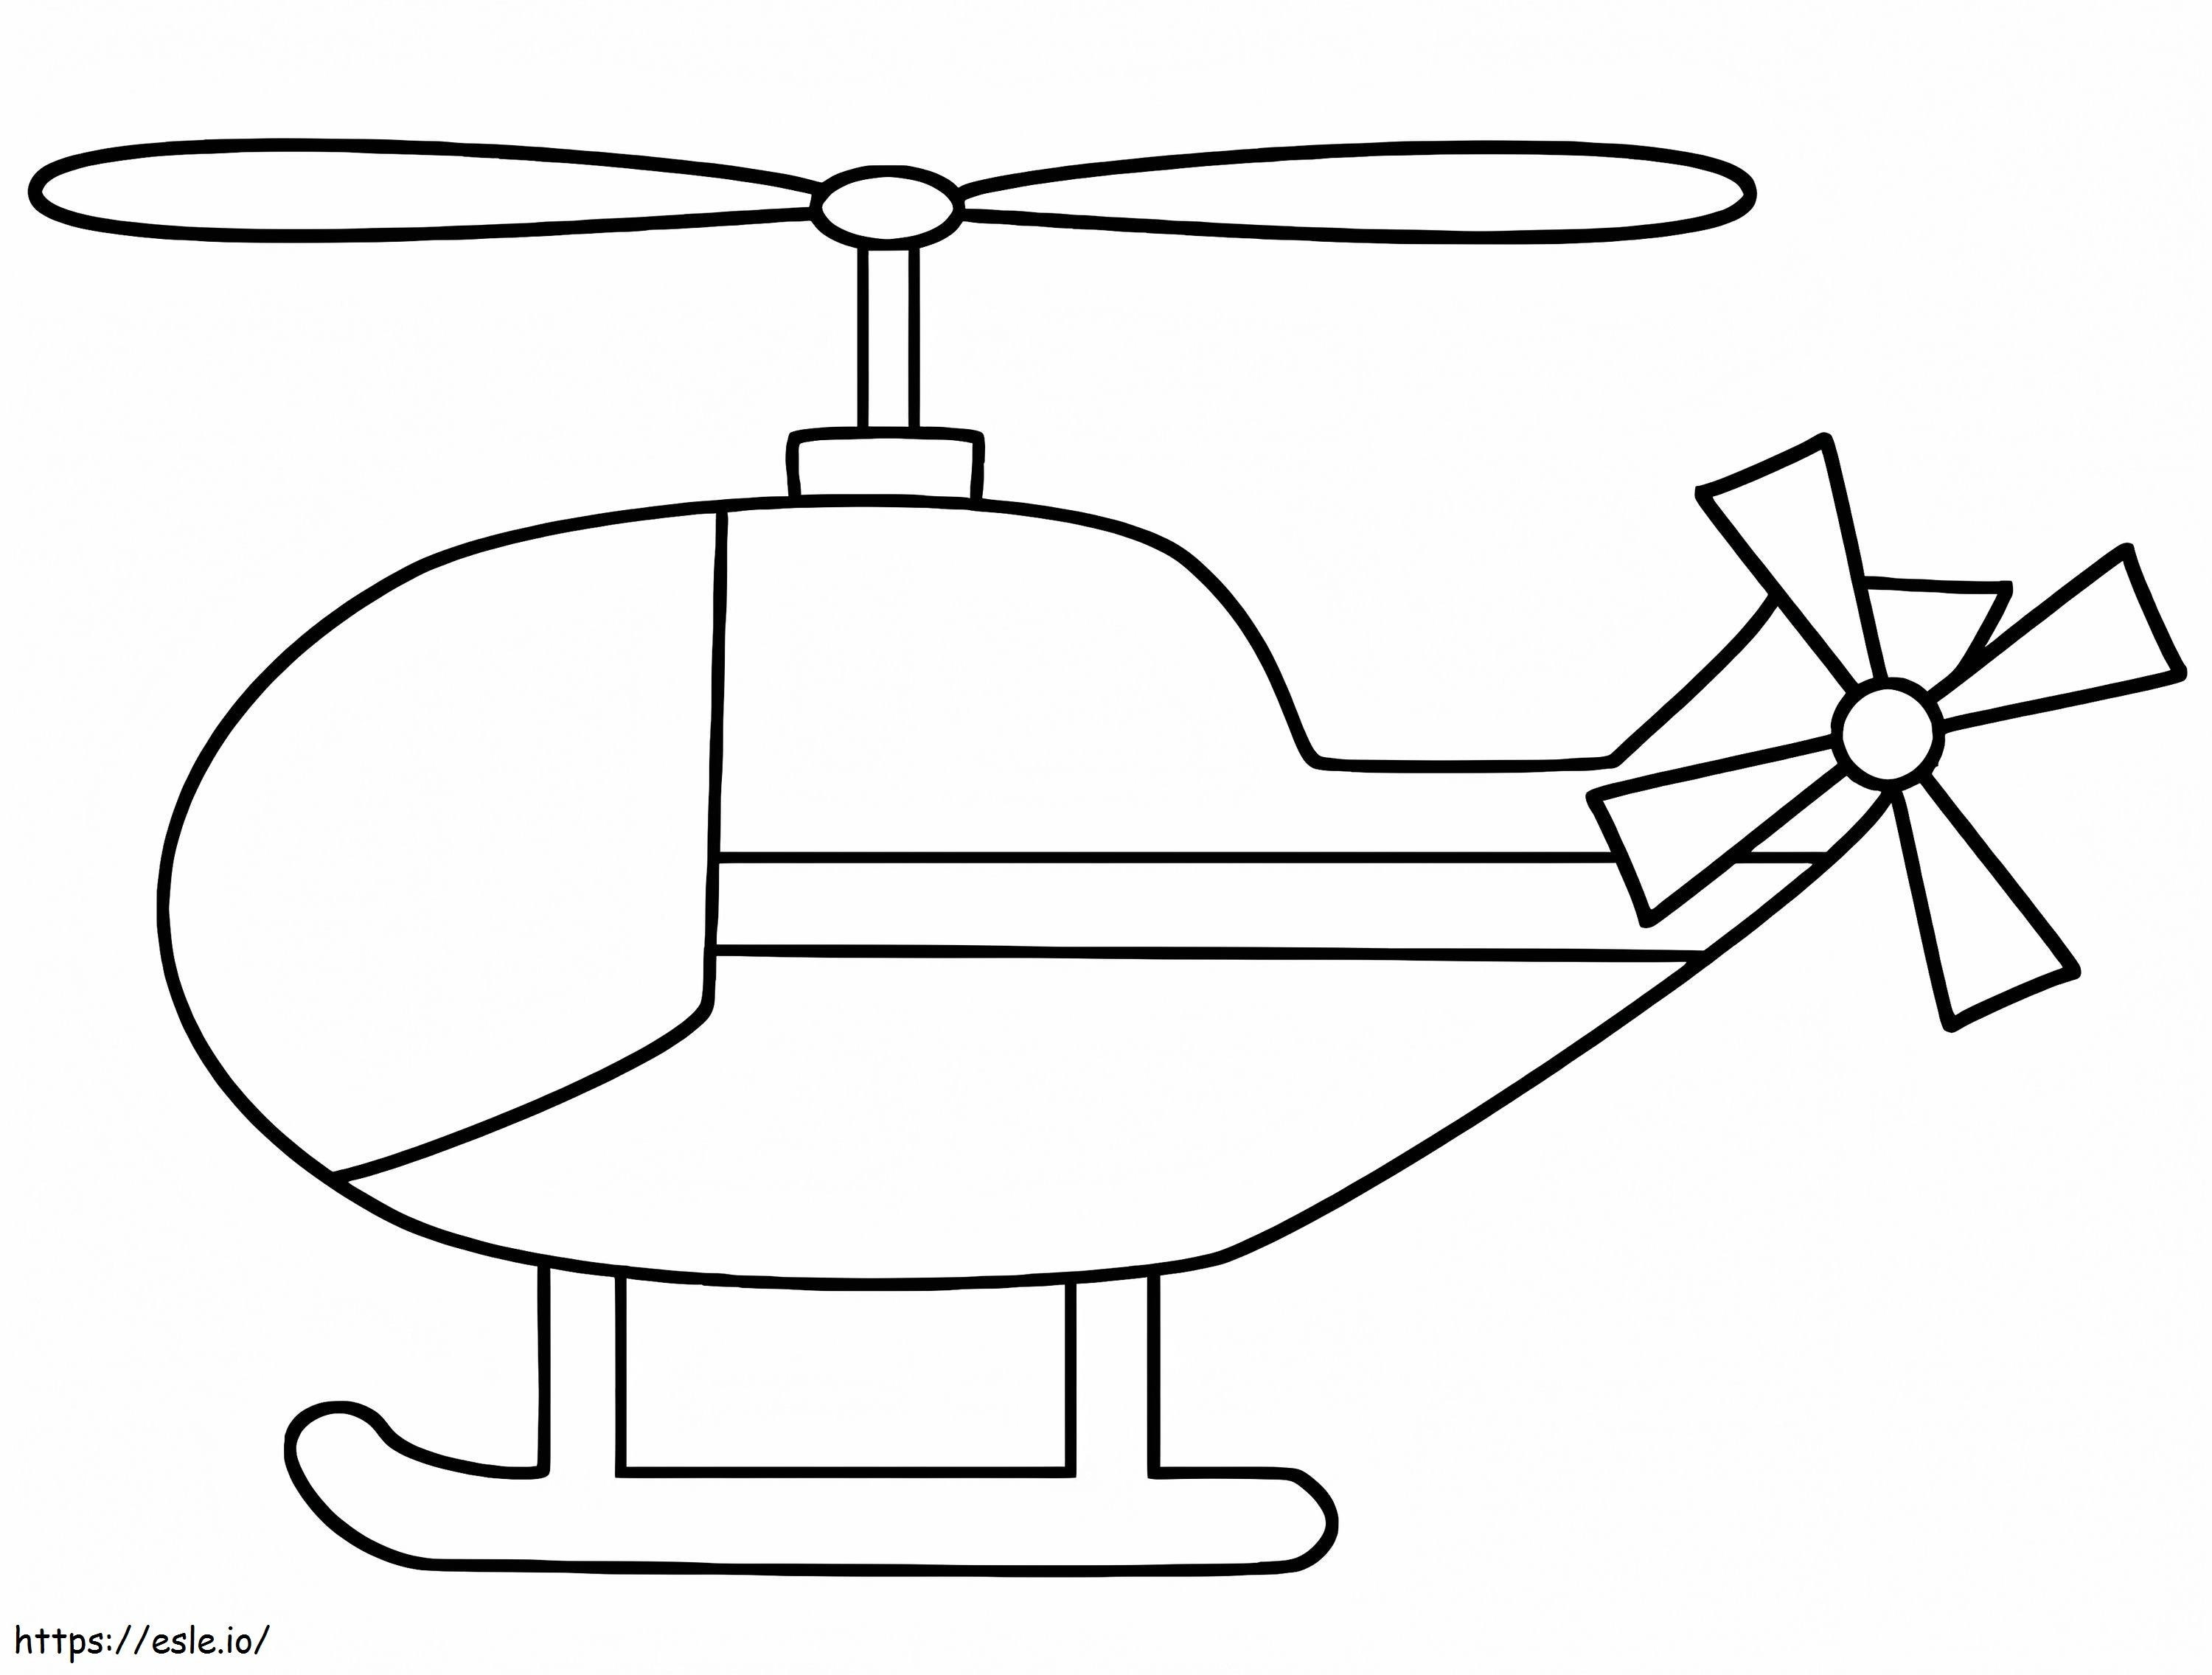 enkele helikopter kleurplaat kleurplaat